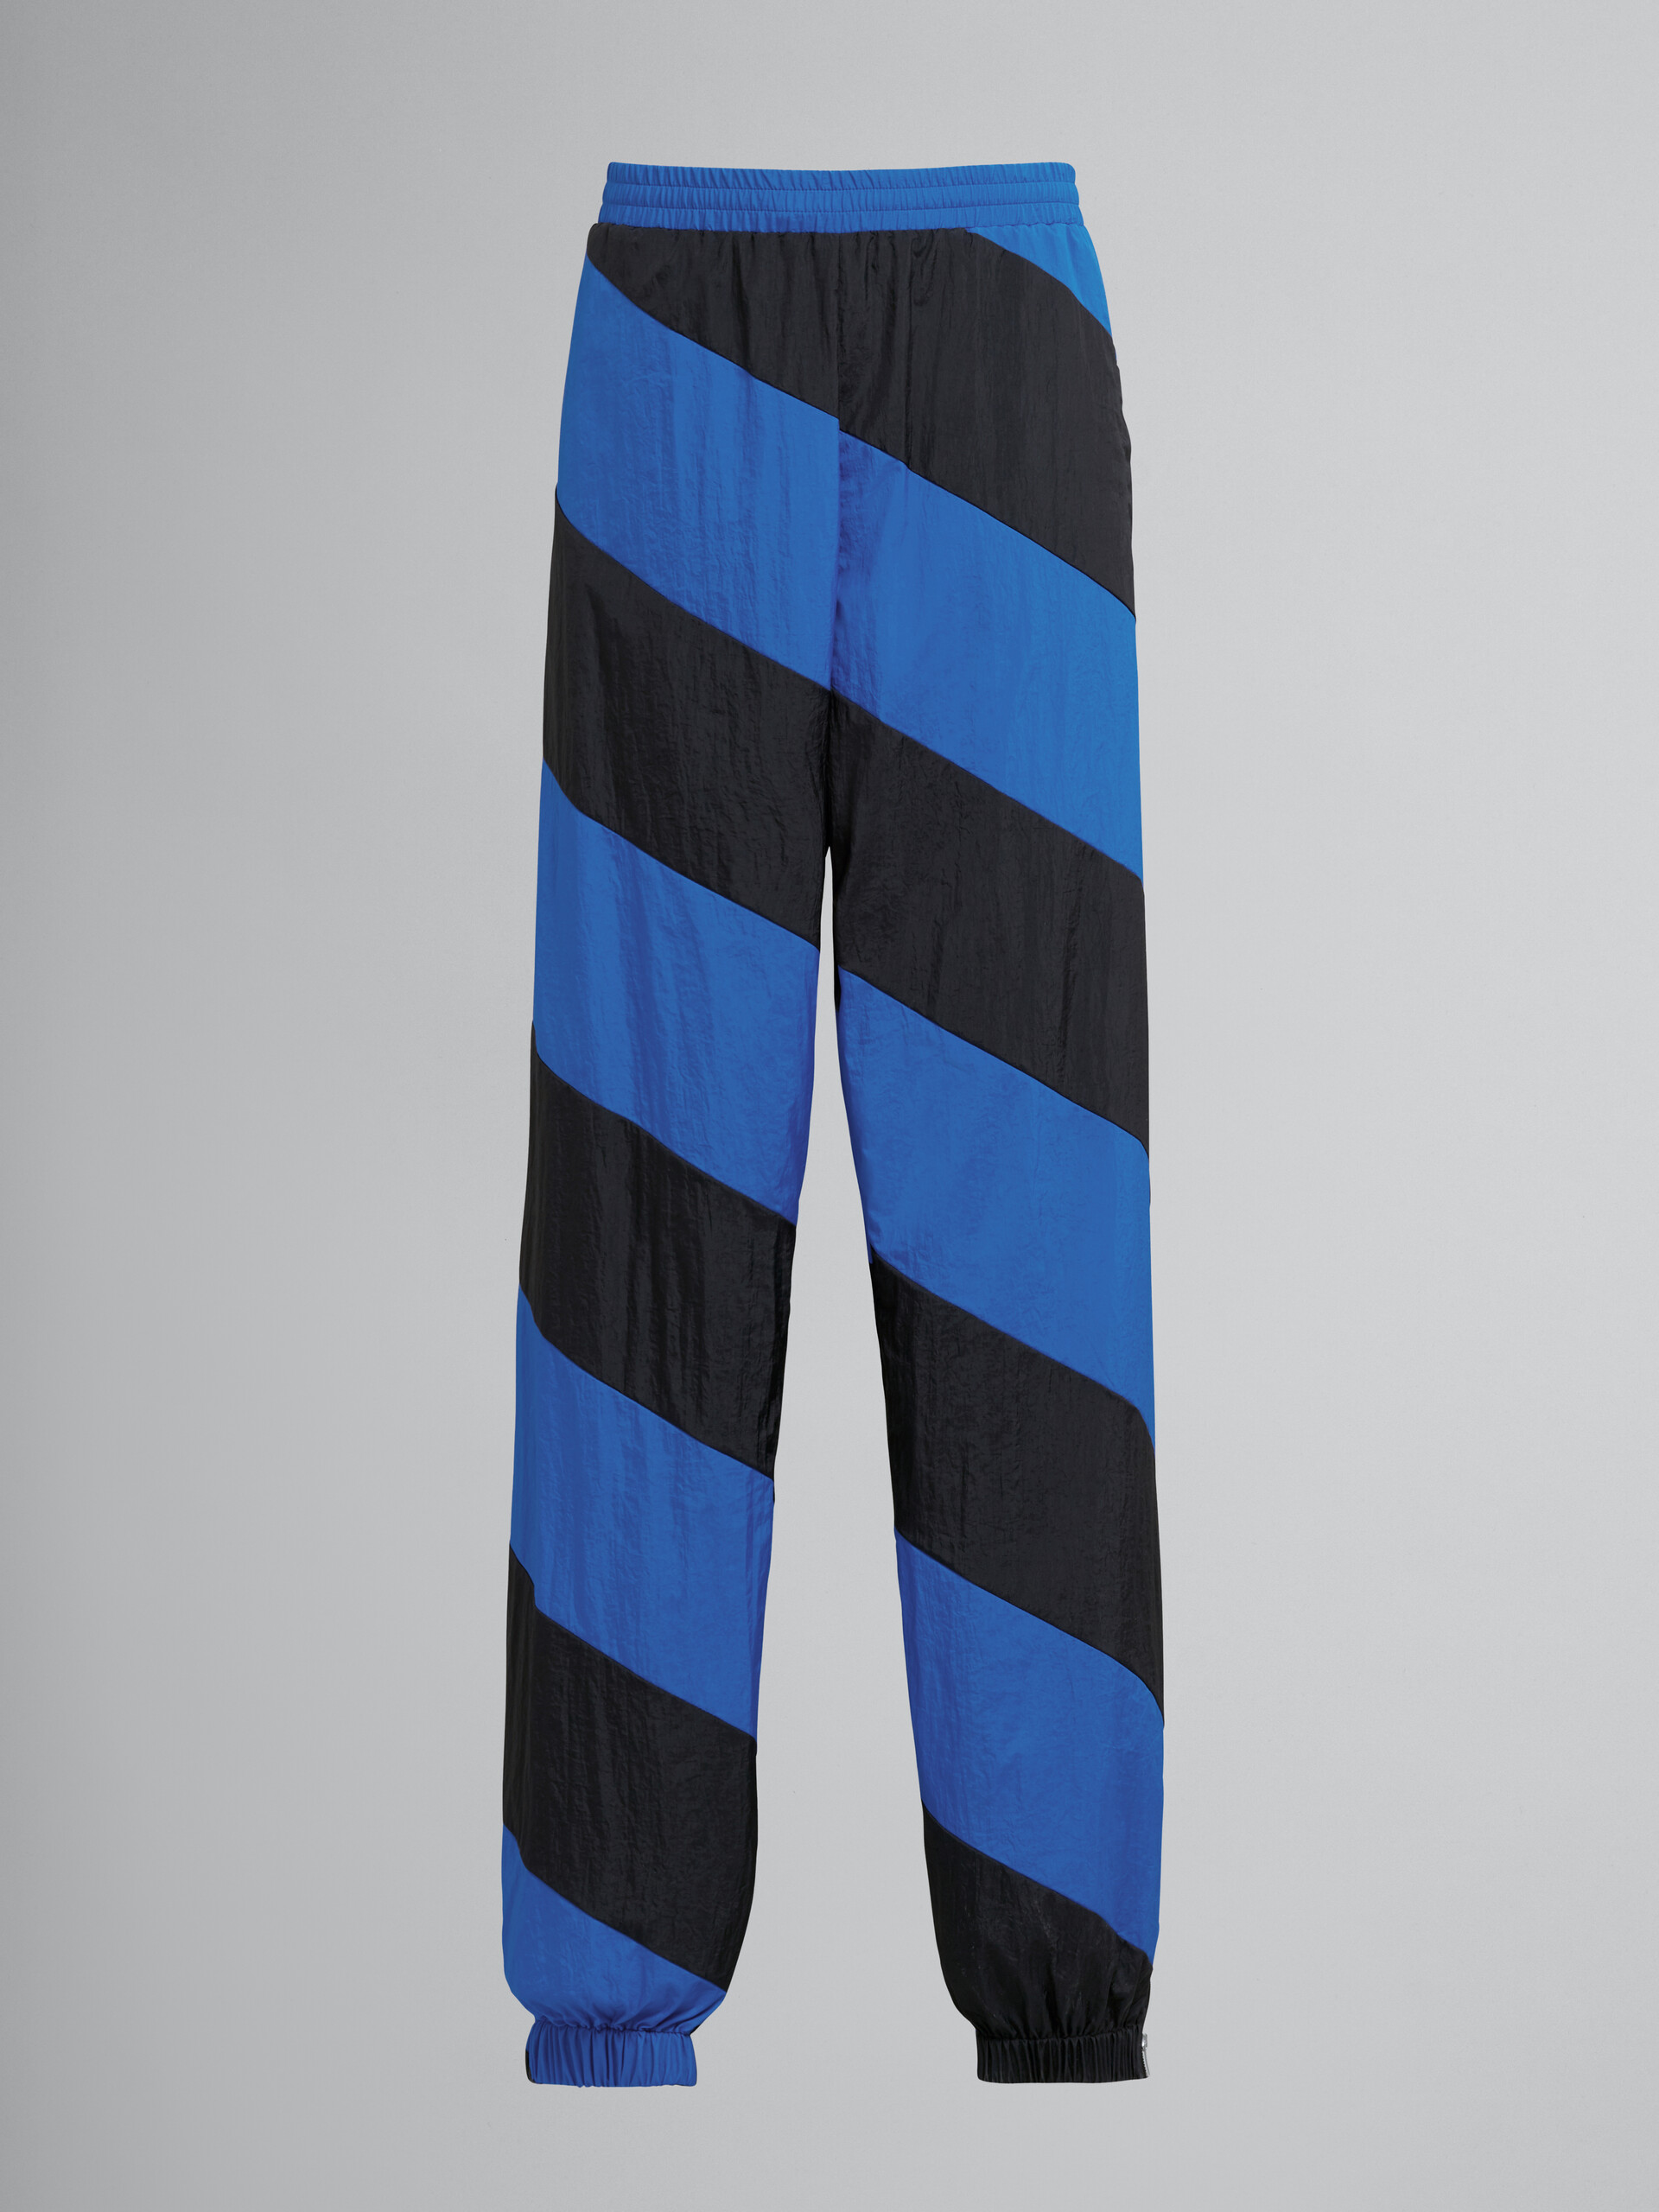 Leichte Hose aus zerknittertem Nylon - Hosen - Image 1